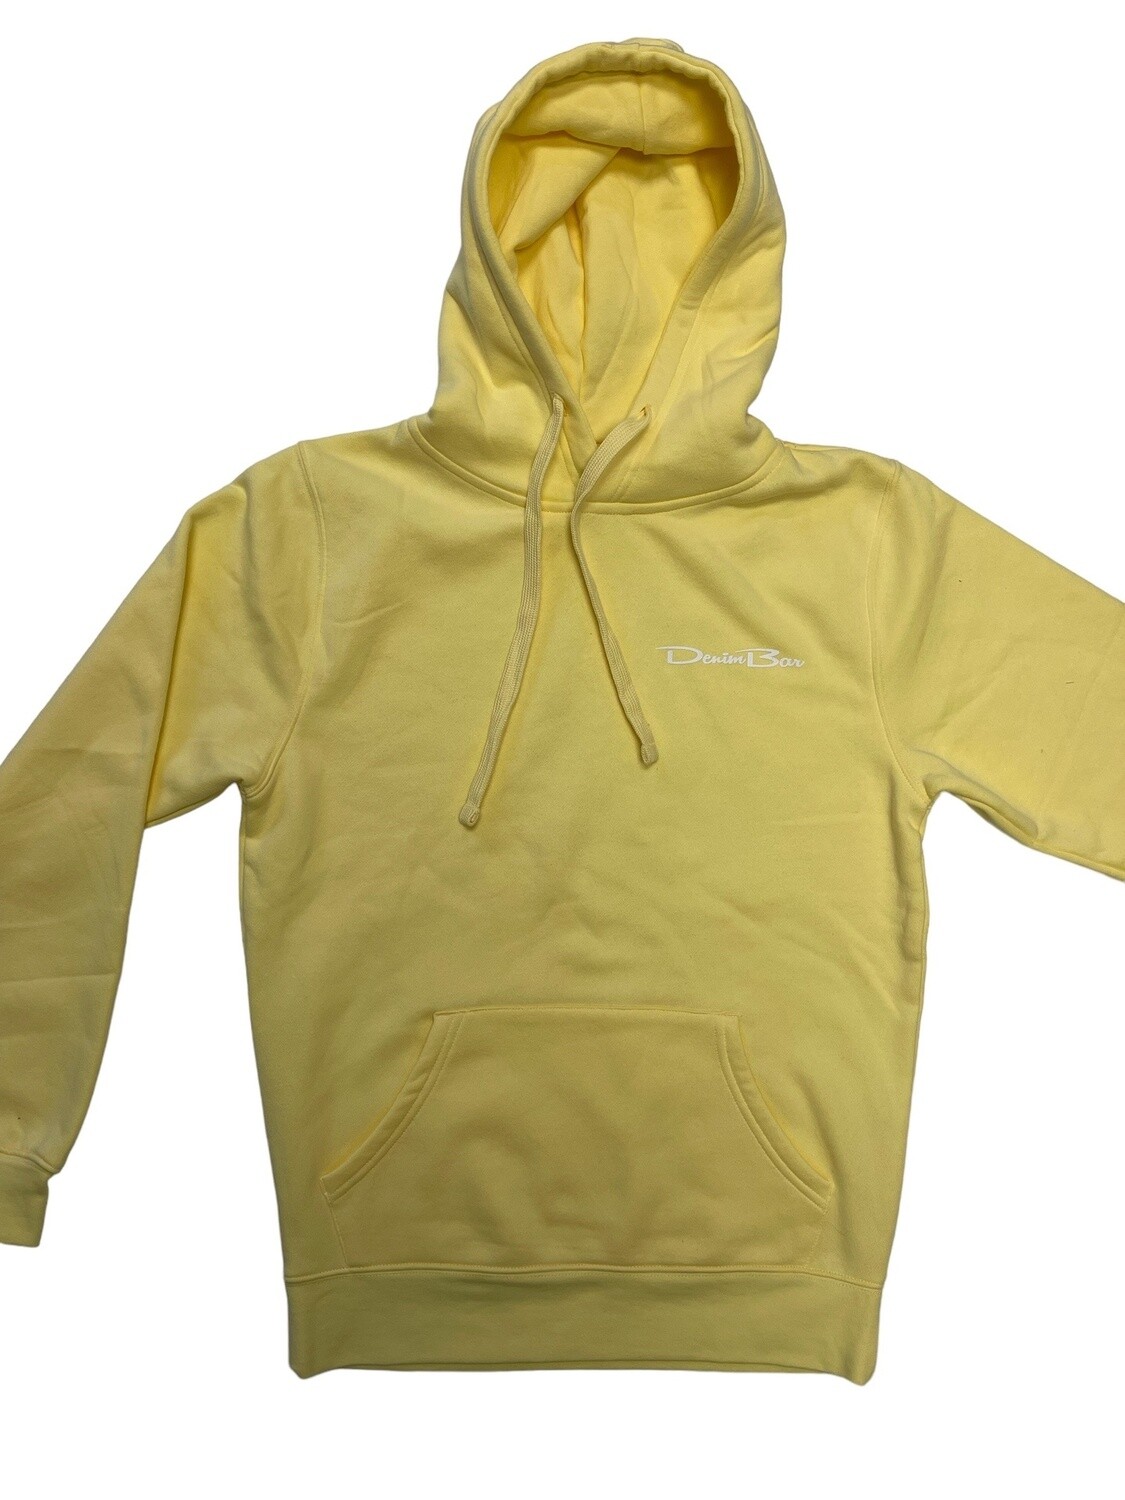 denimbar unisex hoodie Pale Yellow